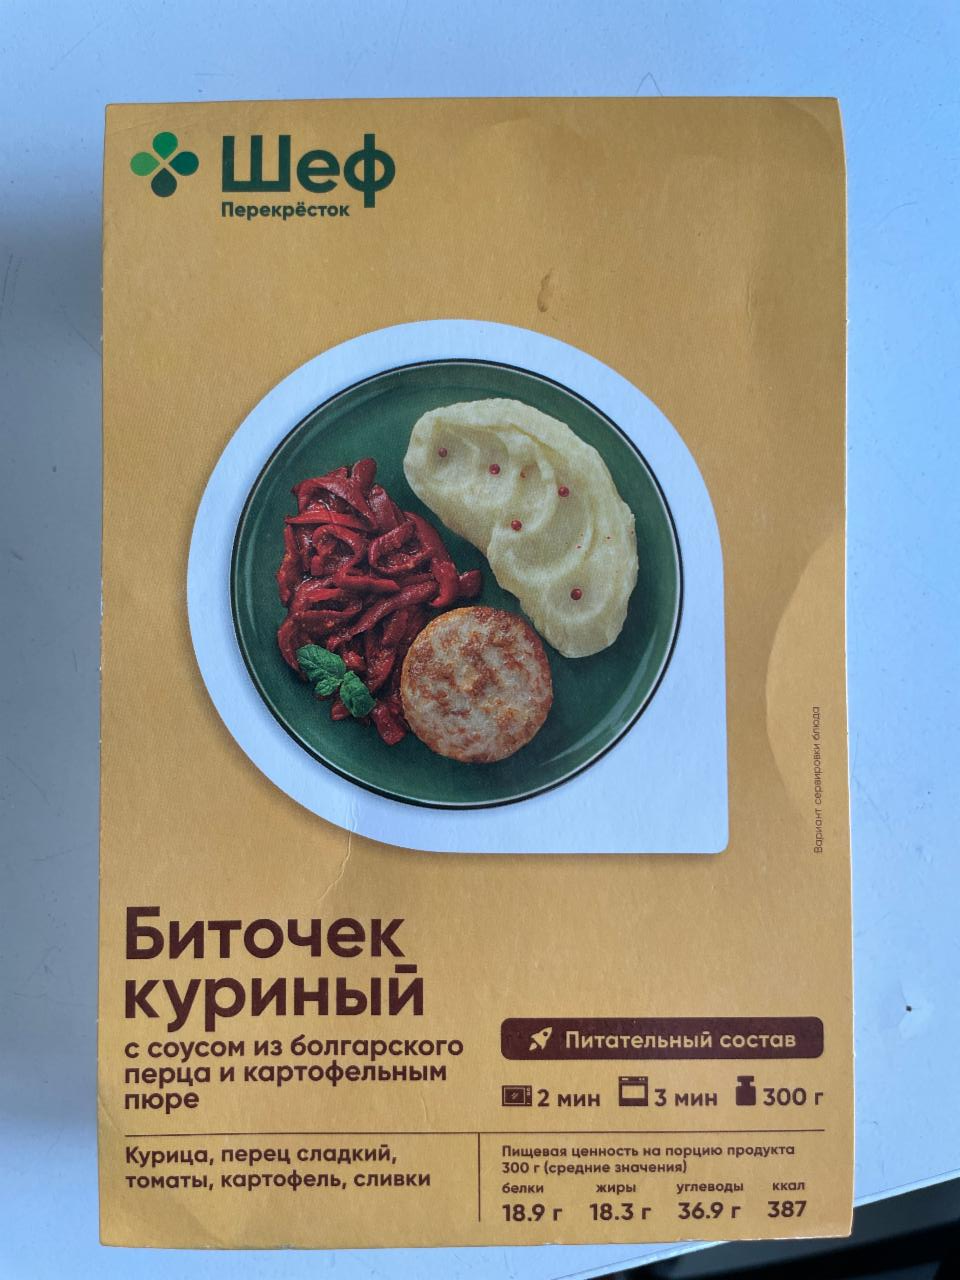 Фото - Биточек куриный с соусом из болгарского перца и картофельным пюре Шеф перекресток